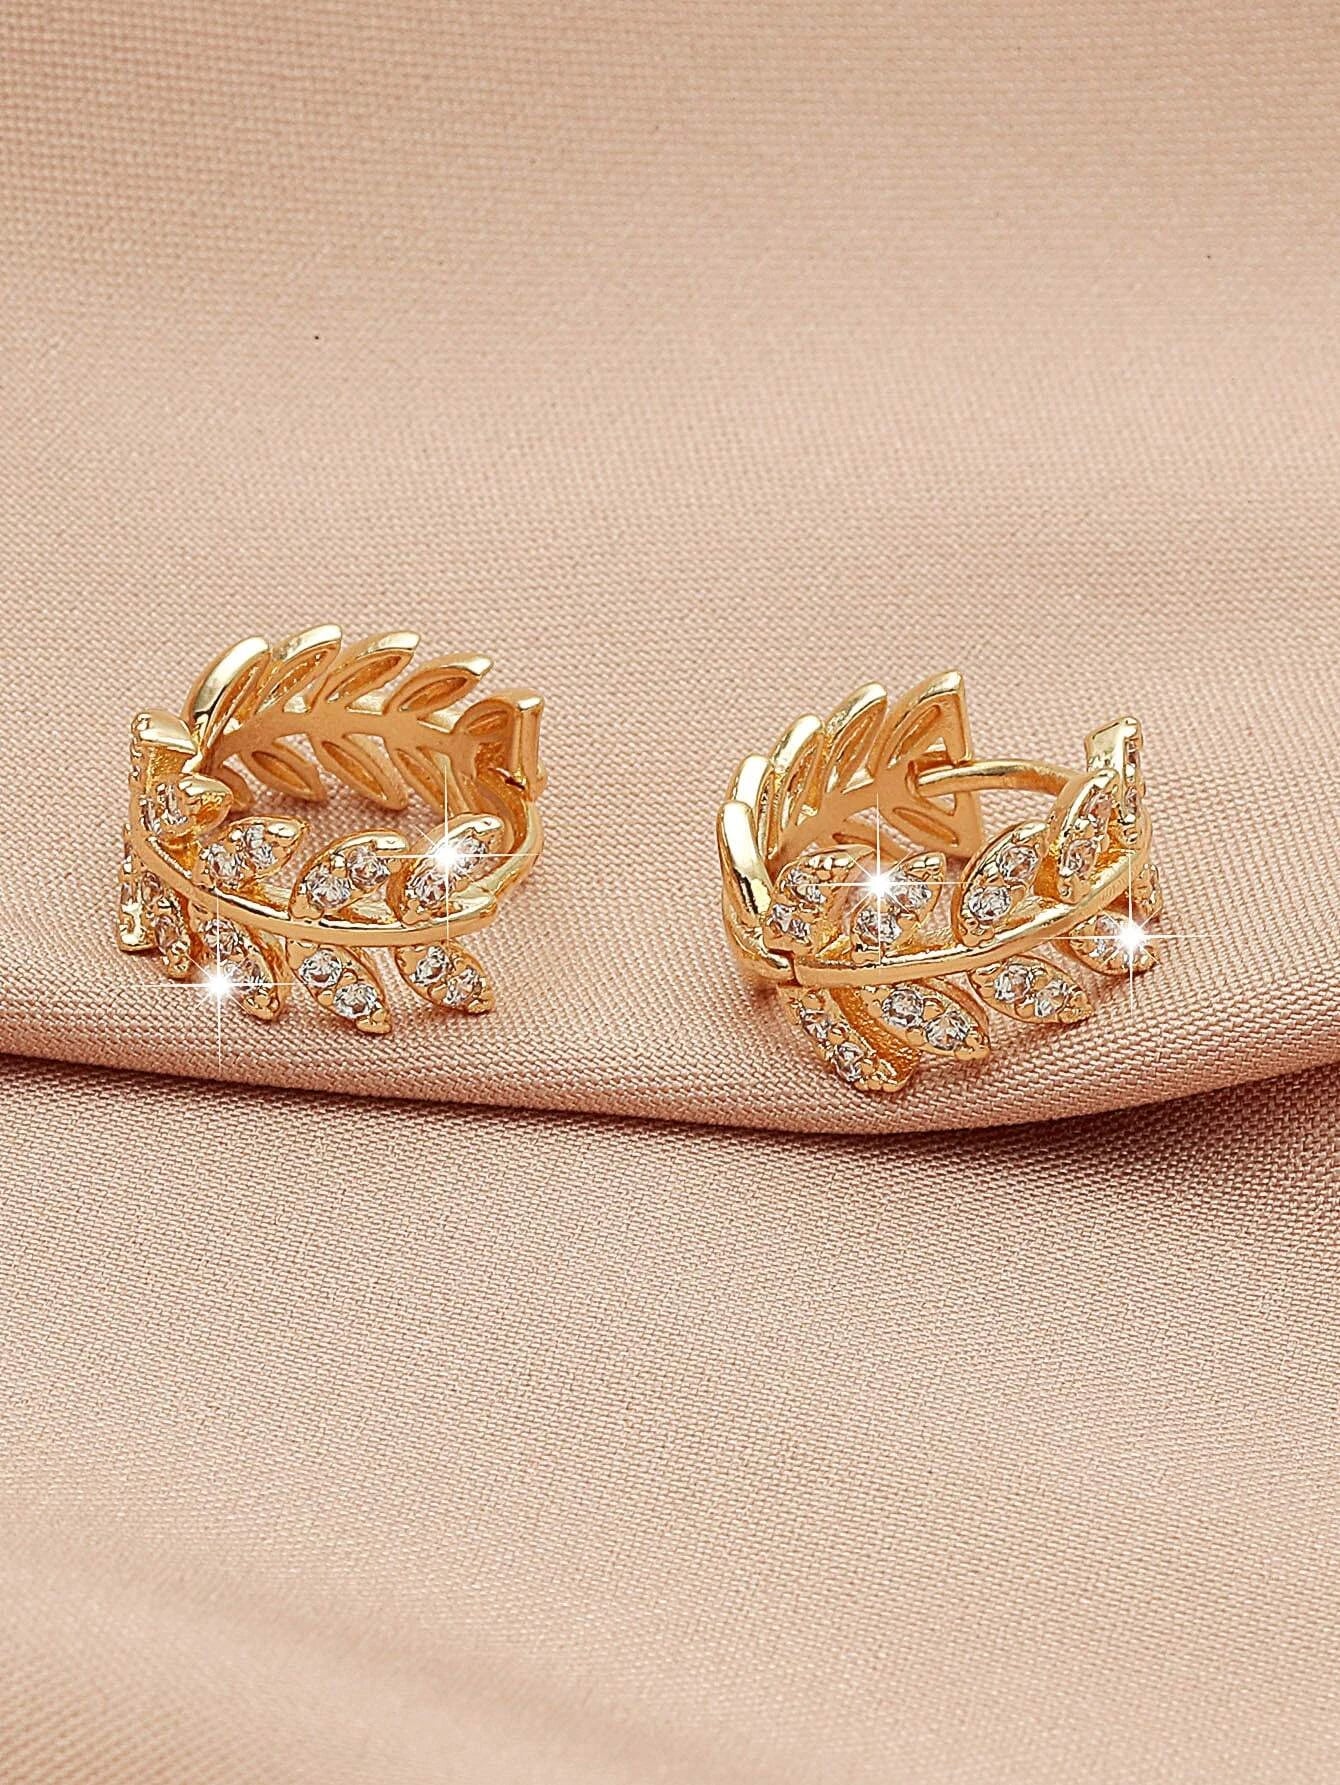 Shein Zircon Decor Leaf Design Earrings